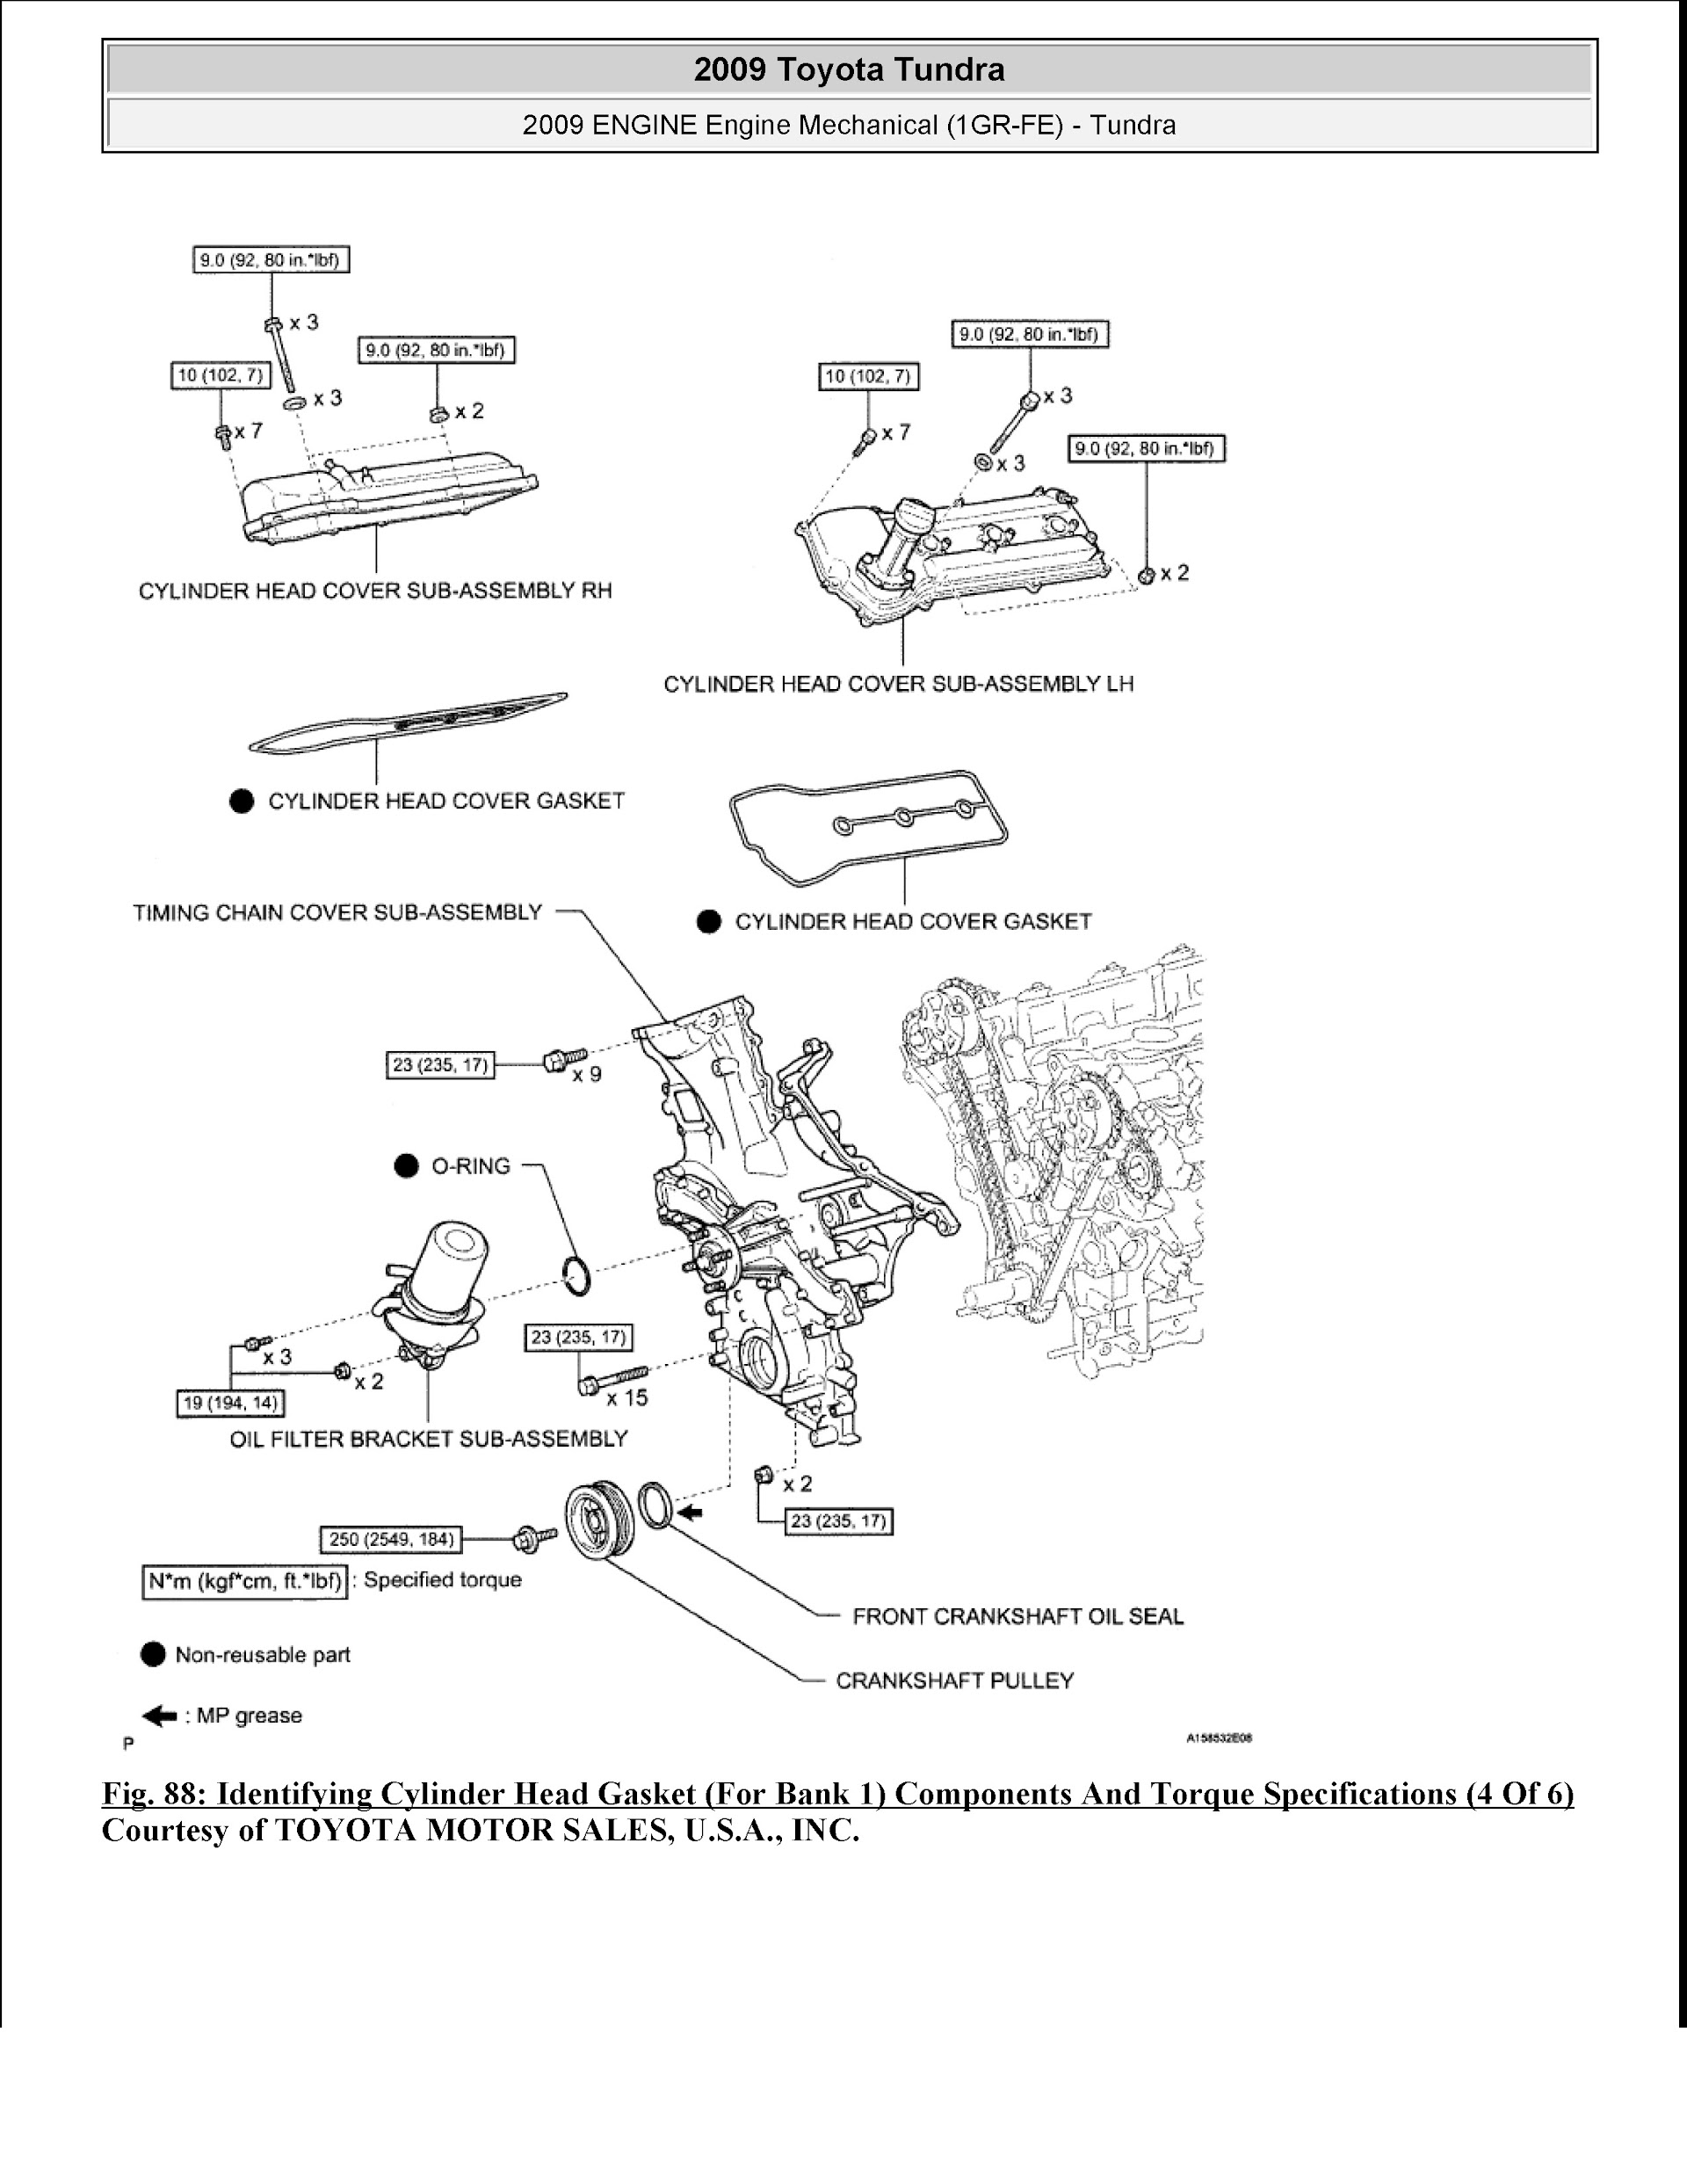 Download 2007-2010 Toyota Tundra Repair Manual.